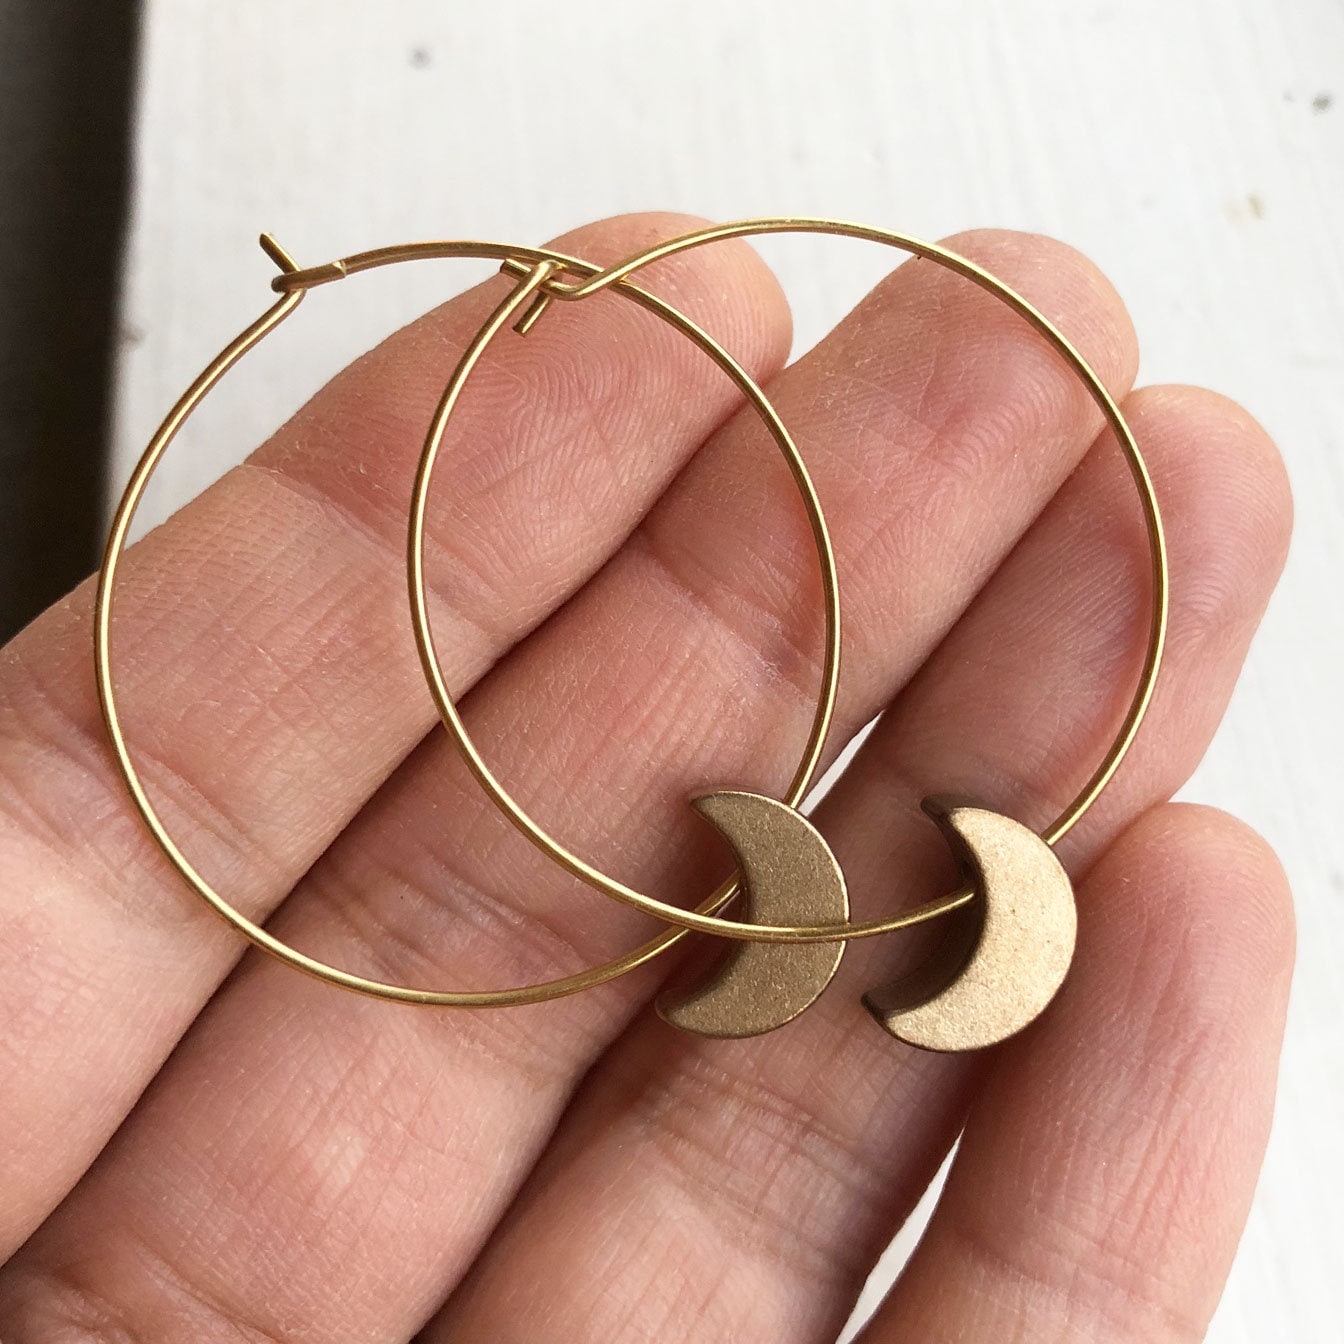 Crescent Moon Hoop Earrings, Celestial jewelry, gold earrings, moon jewelry